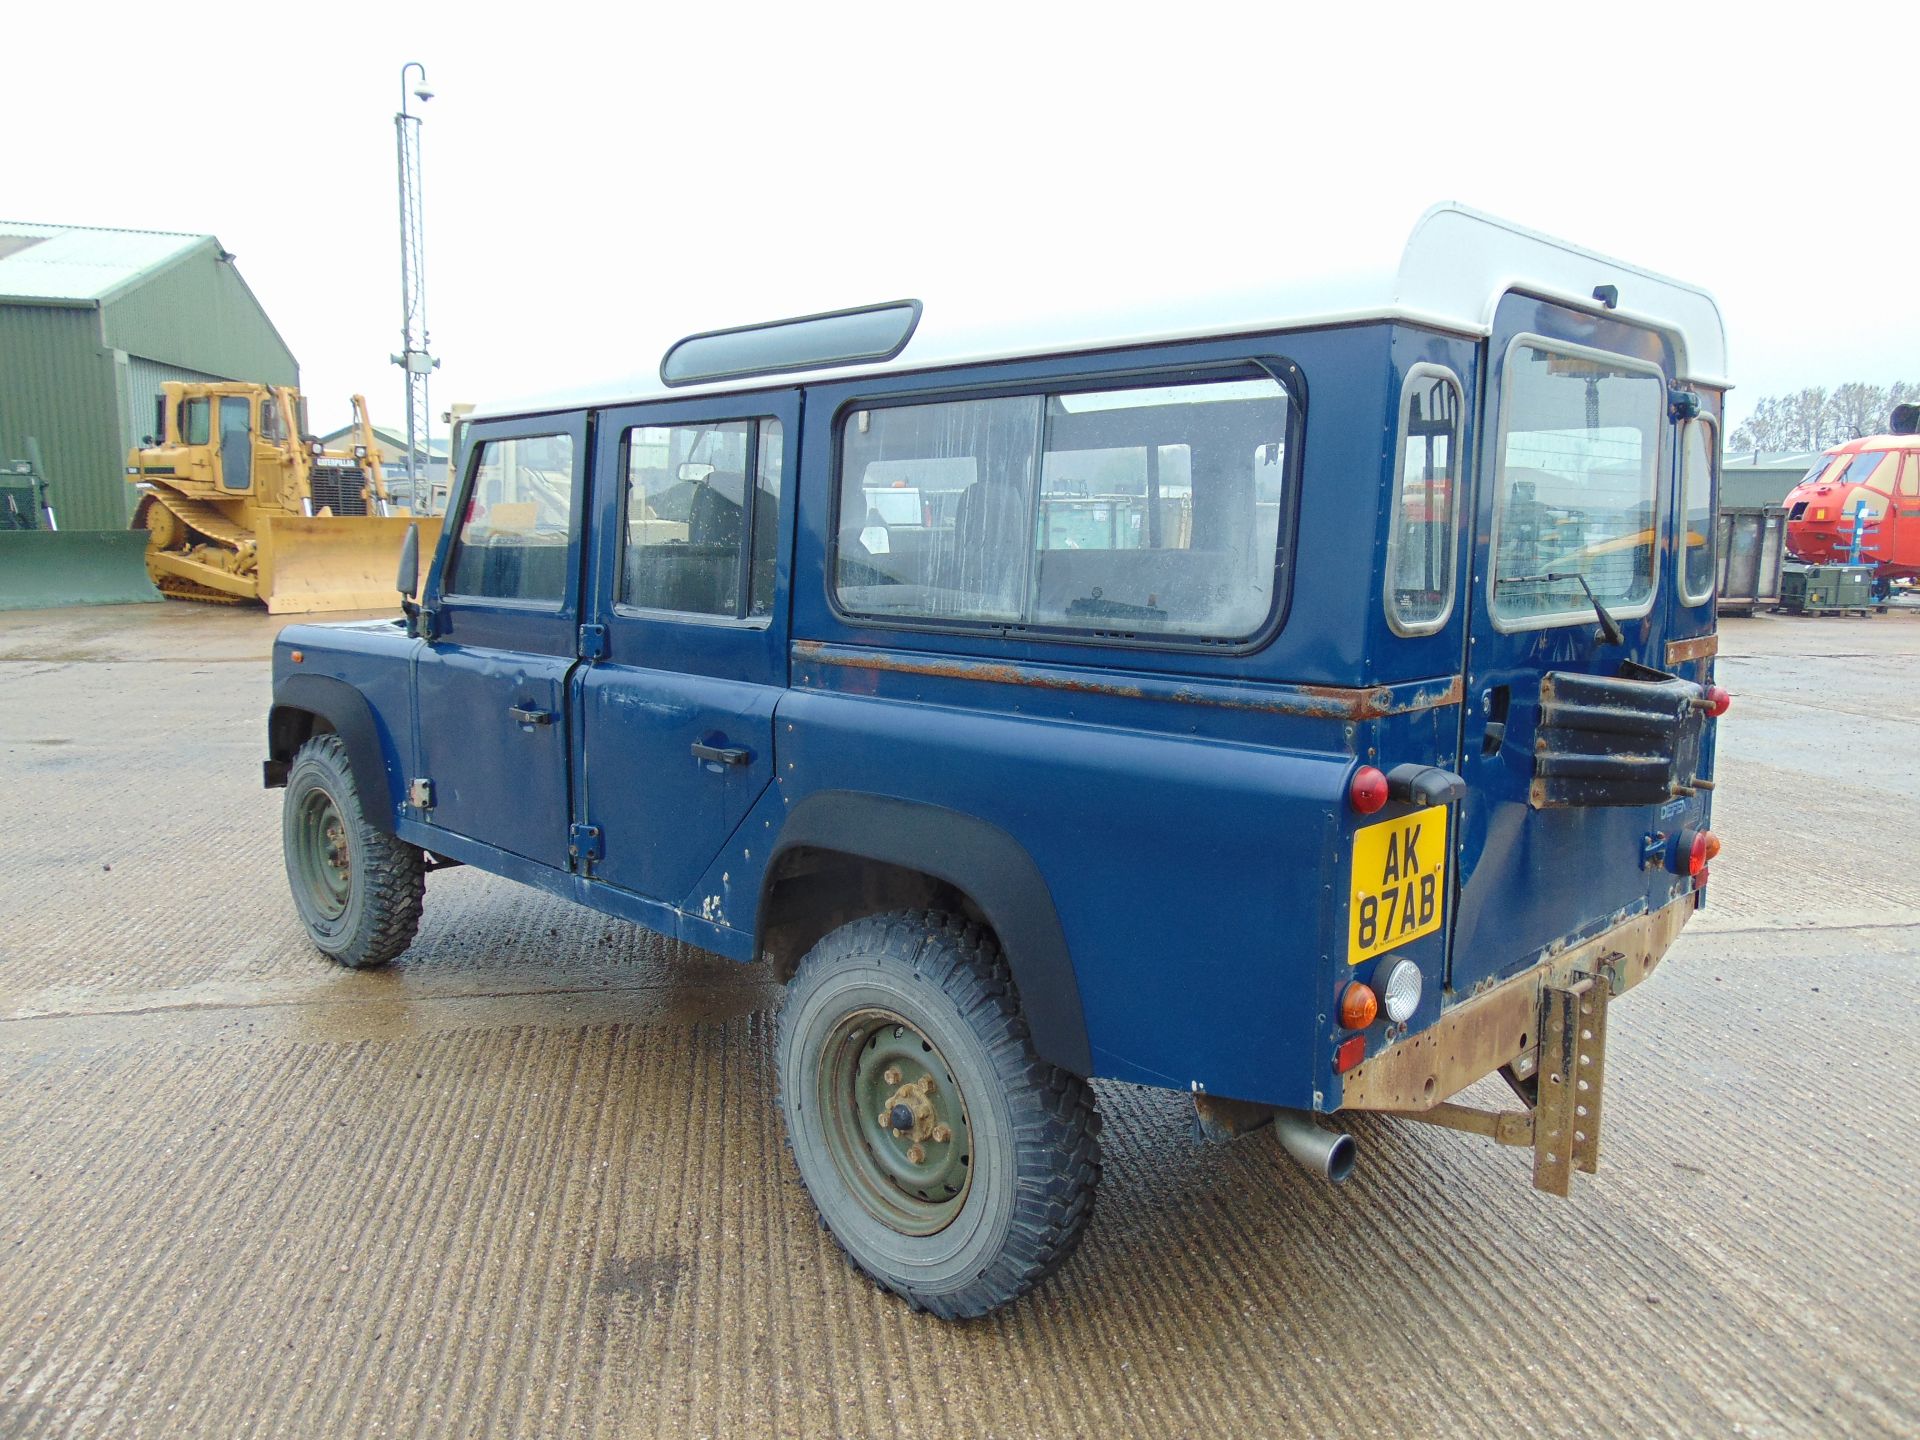 Land Rover Defender 110 TD5 Station Wagon - Image 5 of 26